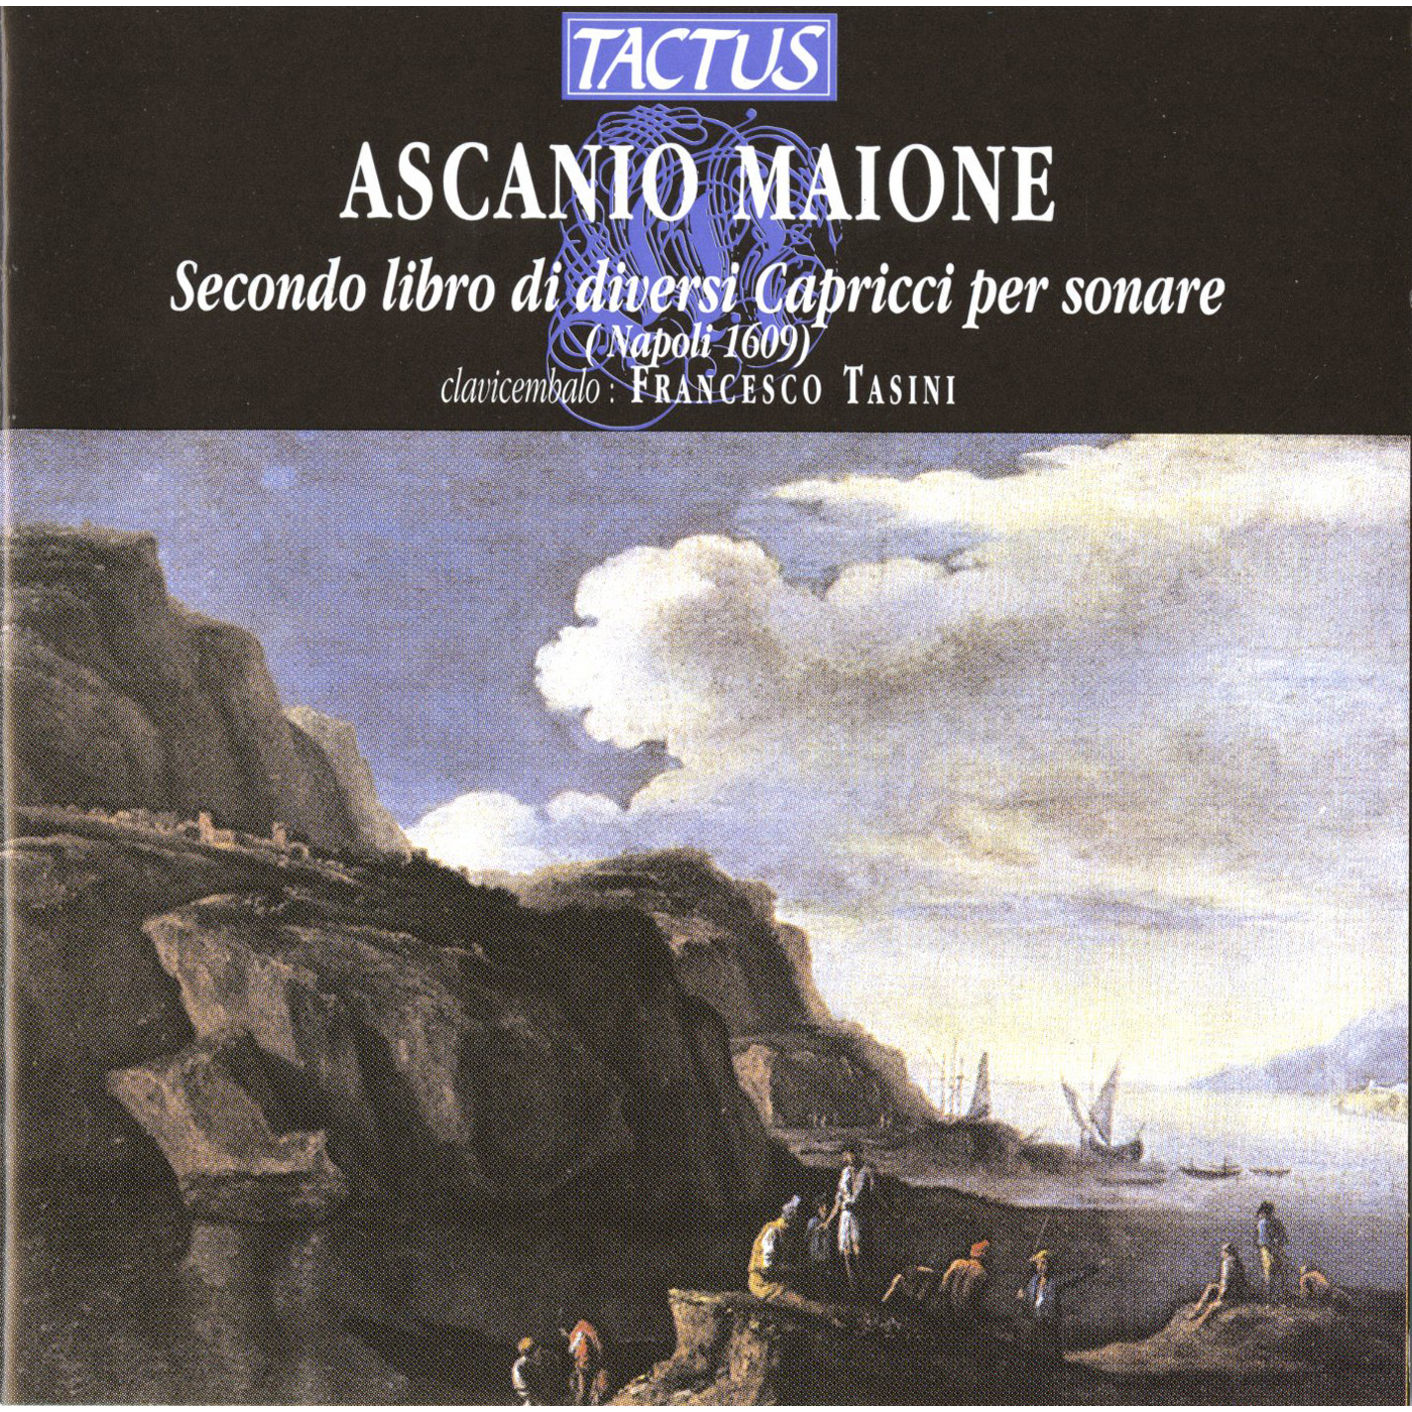 Maione - Secondo libro di diversi capricci per sonare, 1609 - Francesco Tasini, harpsichord